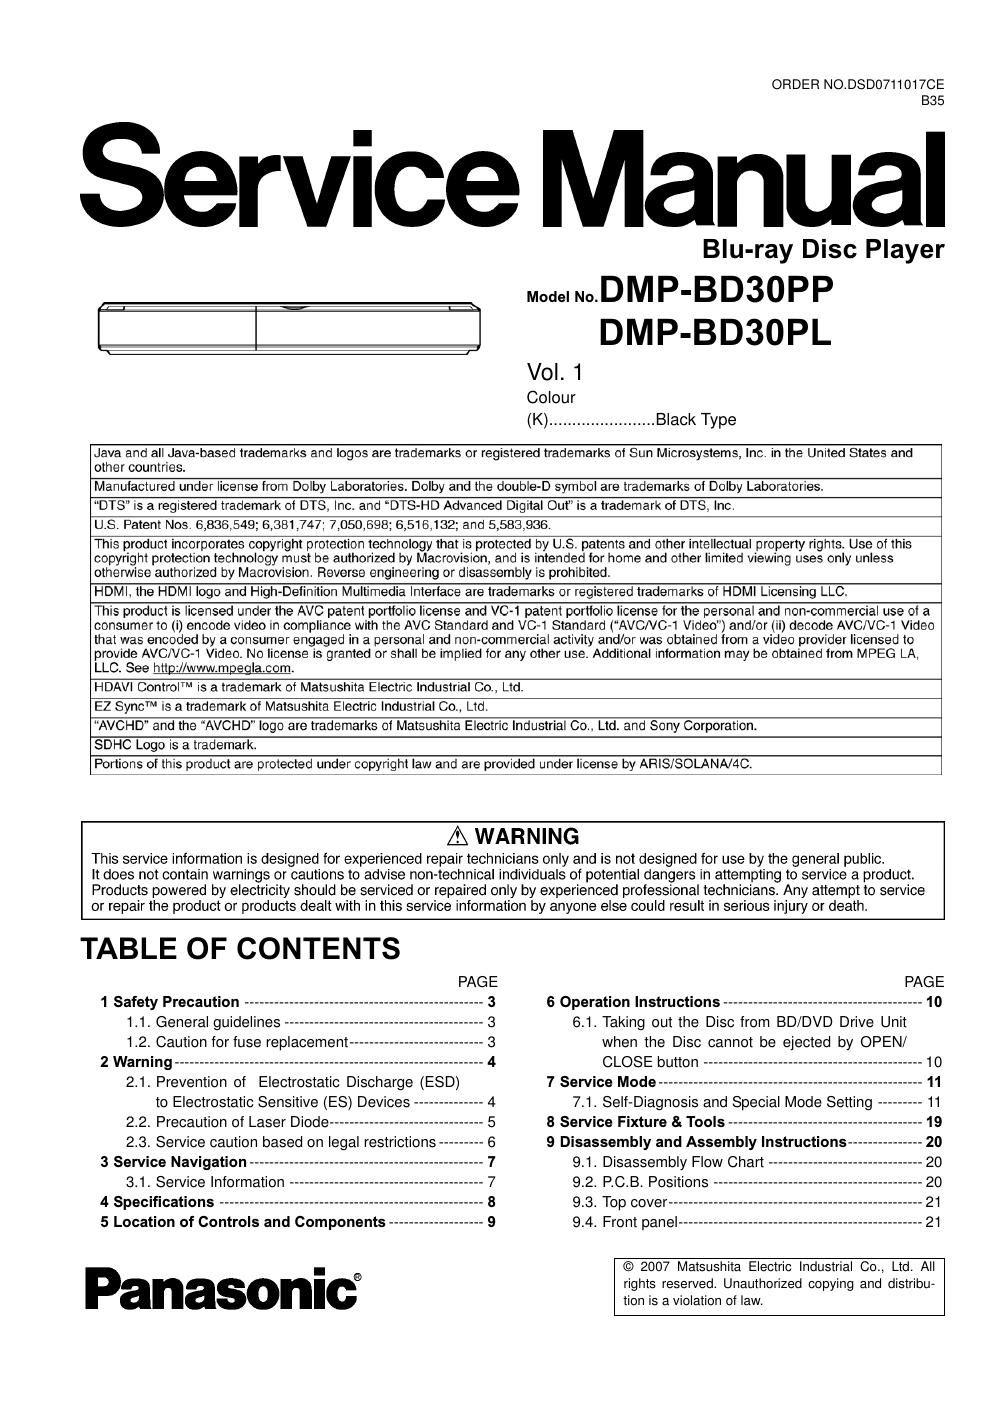 panasonic dmp bd 30 service manual